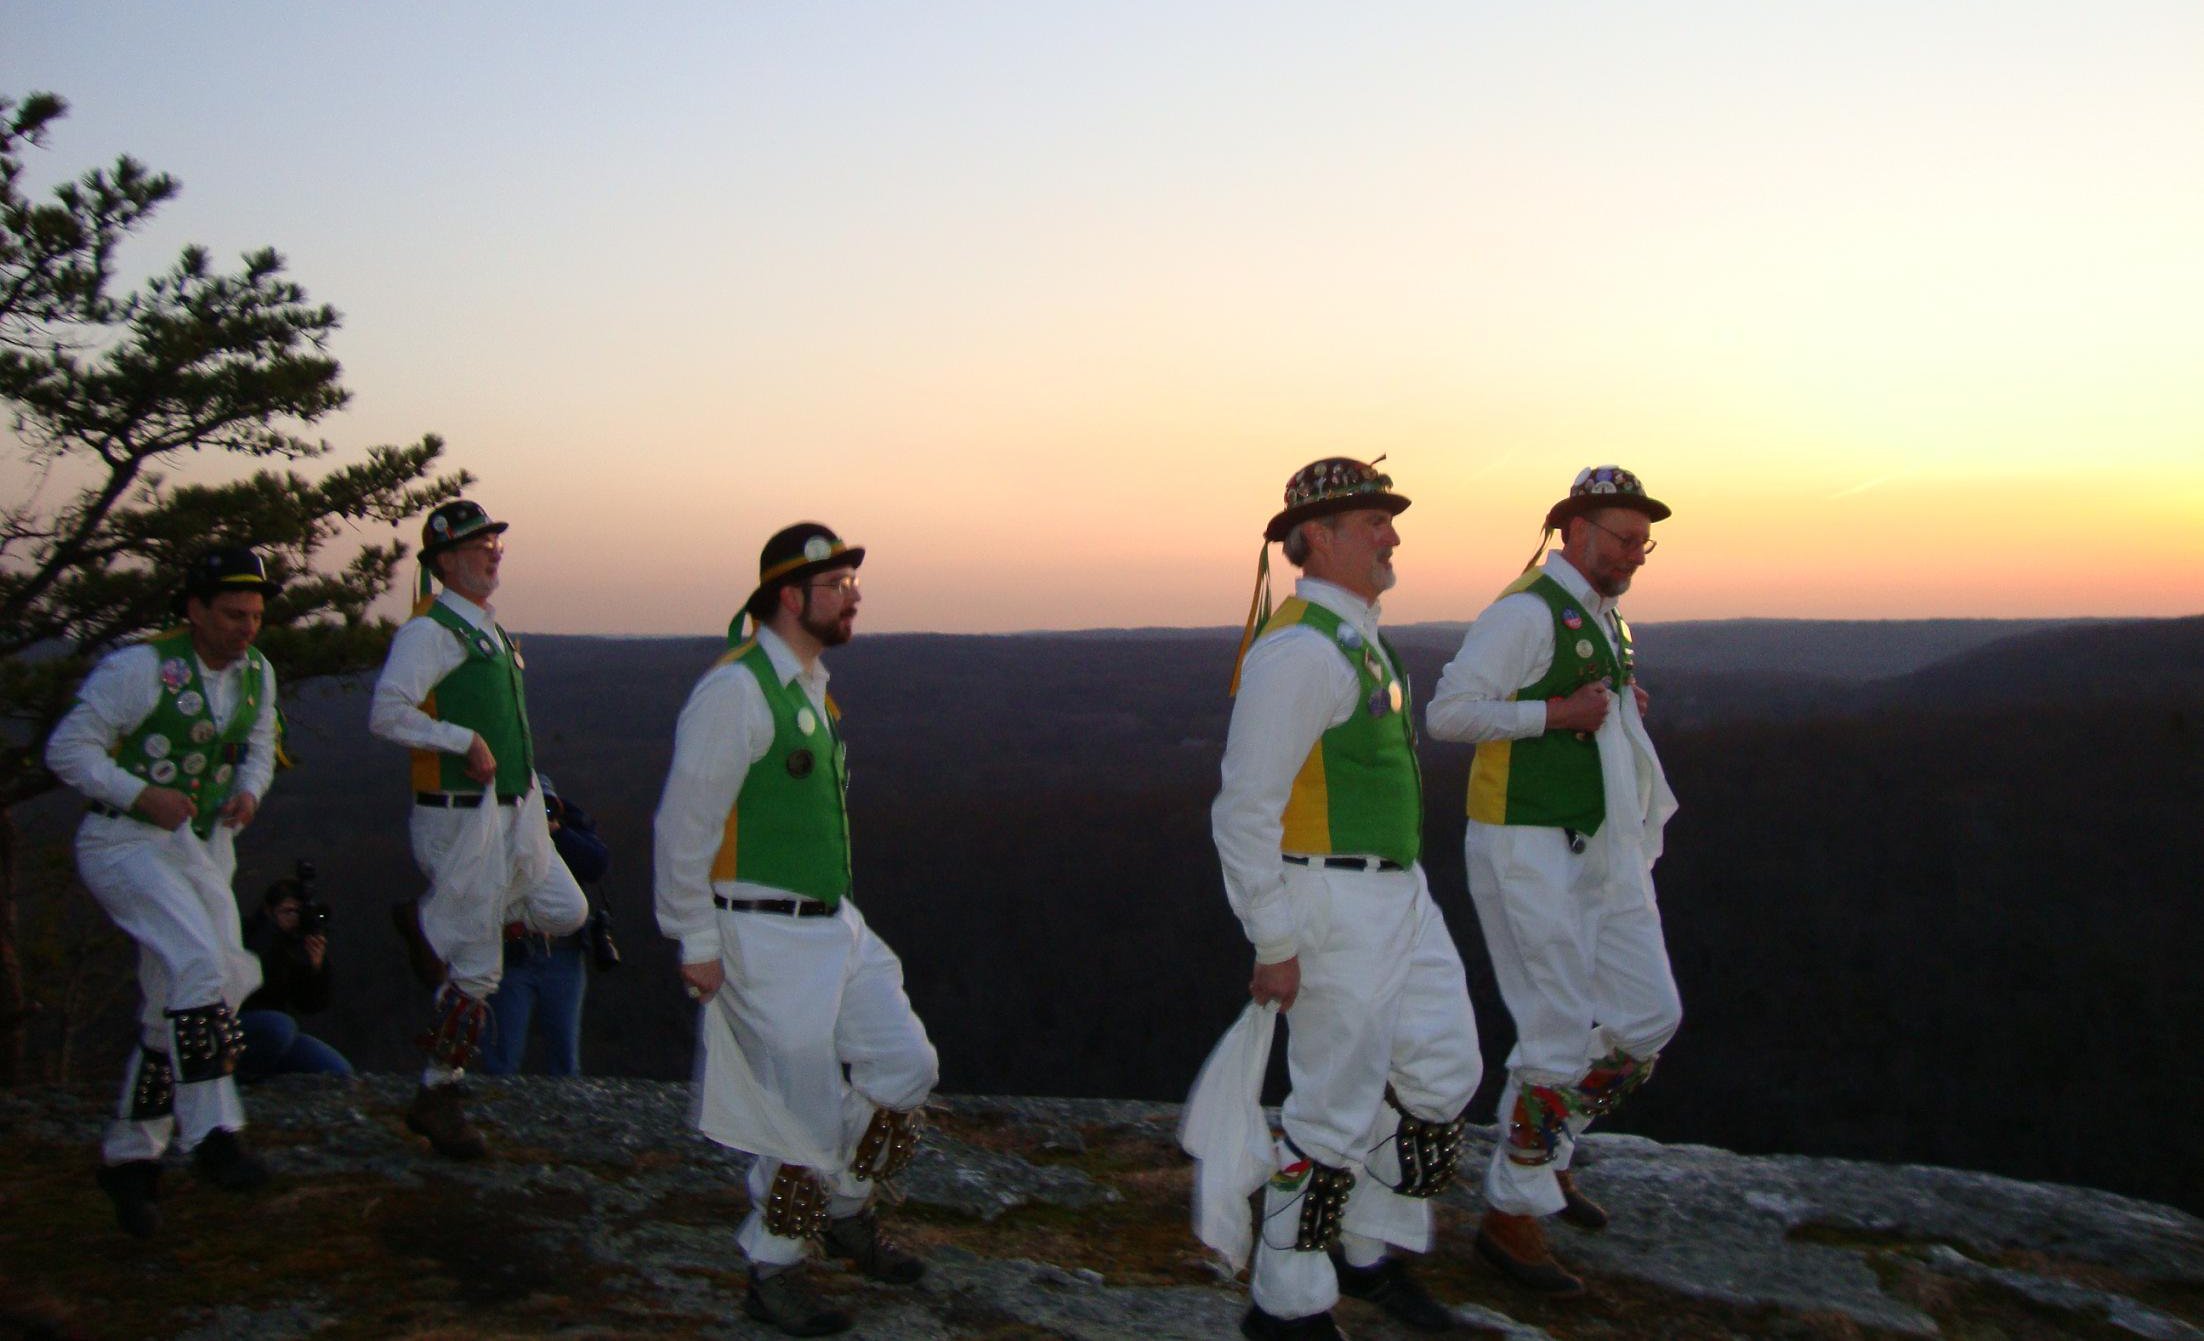 Five dancer set on Lantern Hill